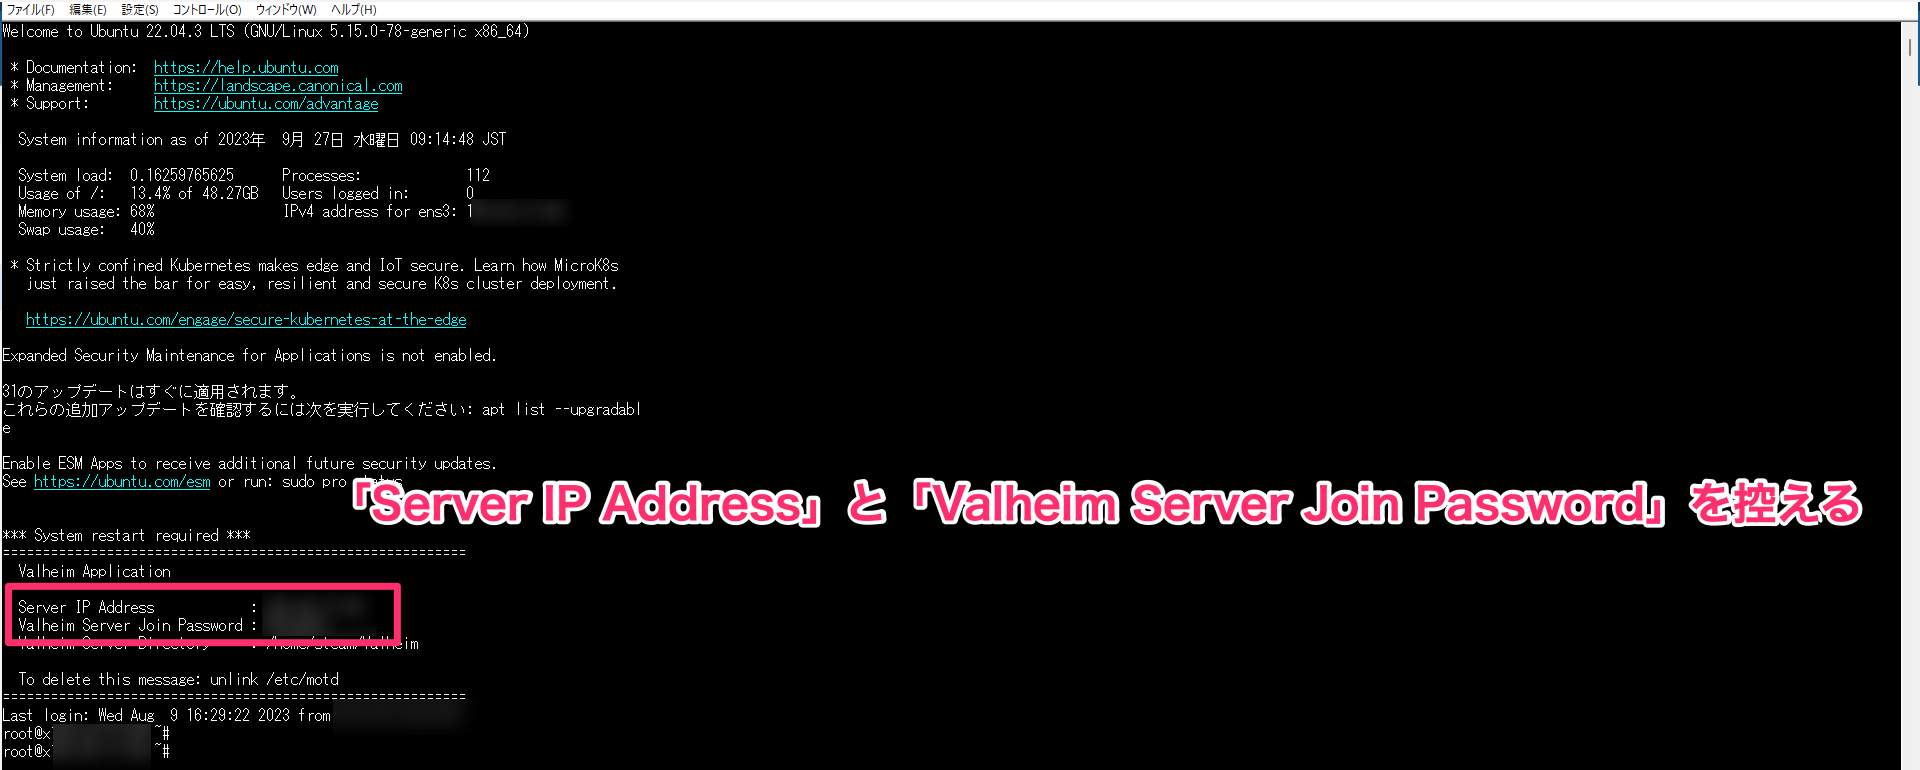 サーバー情報に書かれた「Server IP Address」と「Valheim Server Join Password」